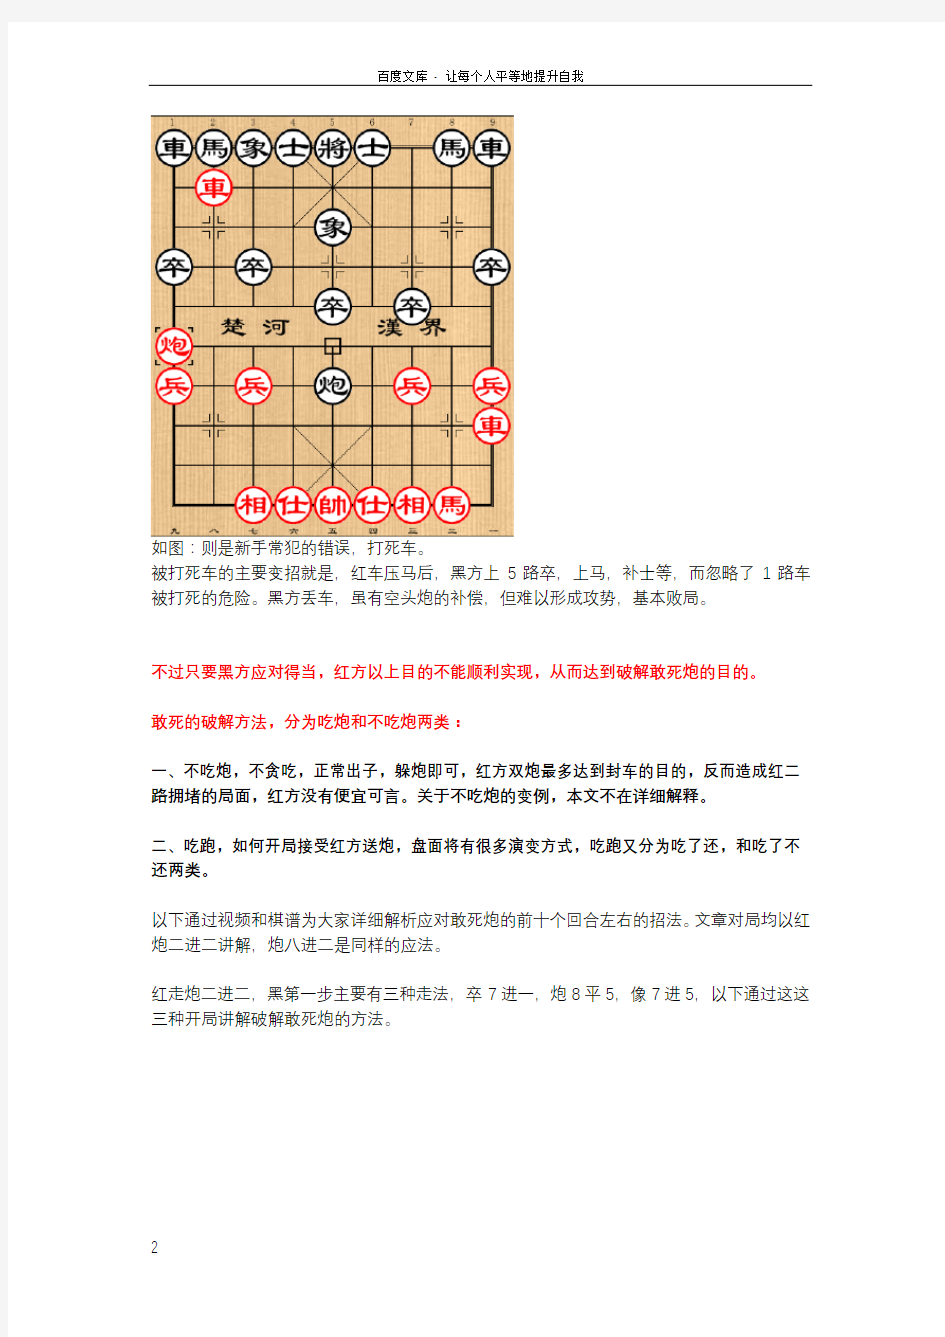 中国象棋布局骗招破解敢死炮的方法解析